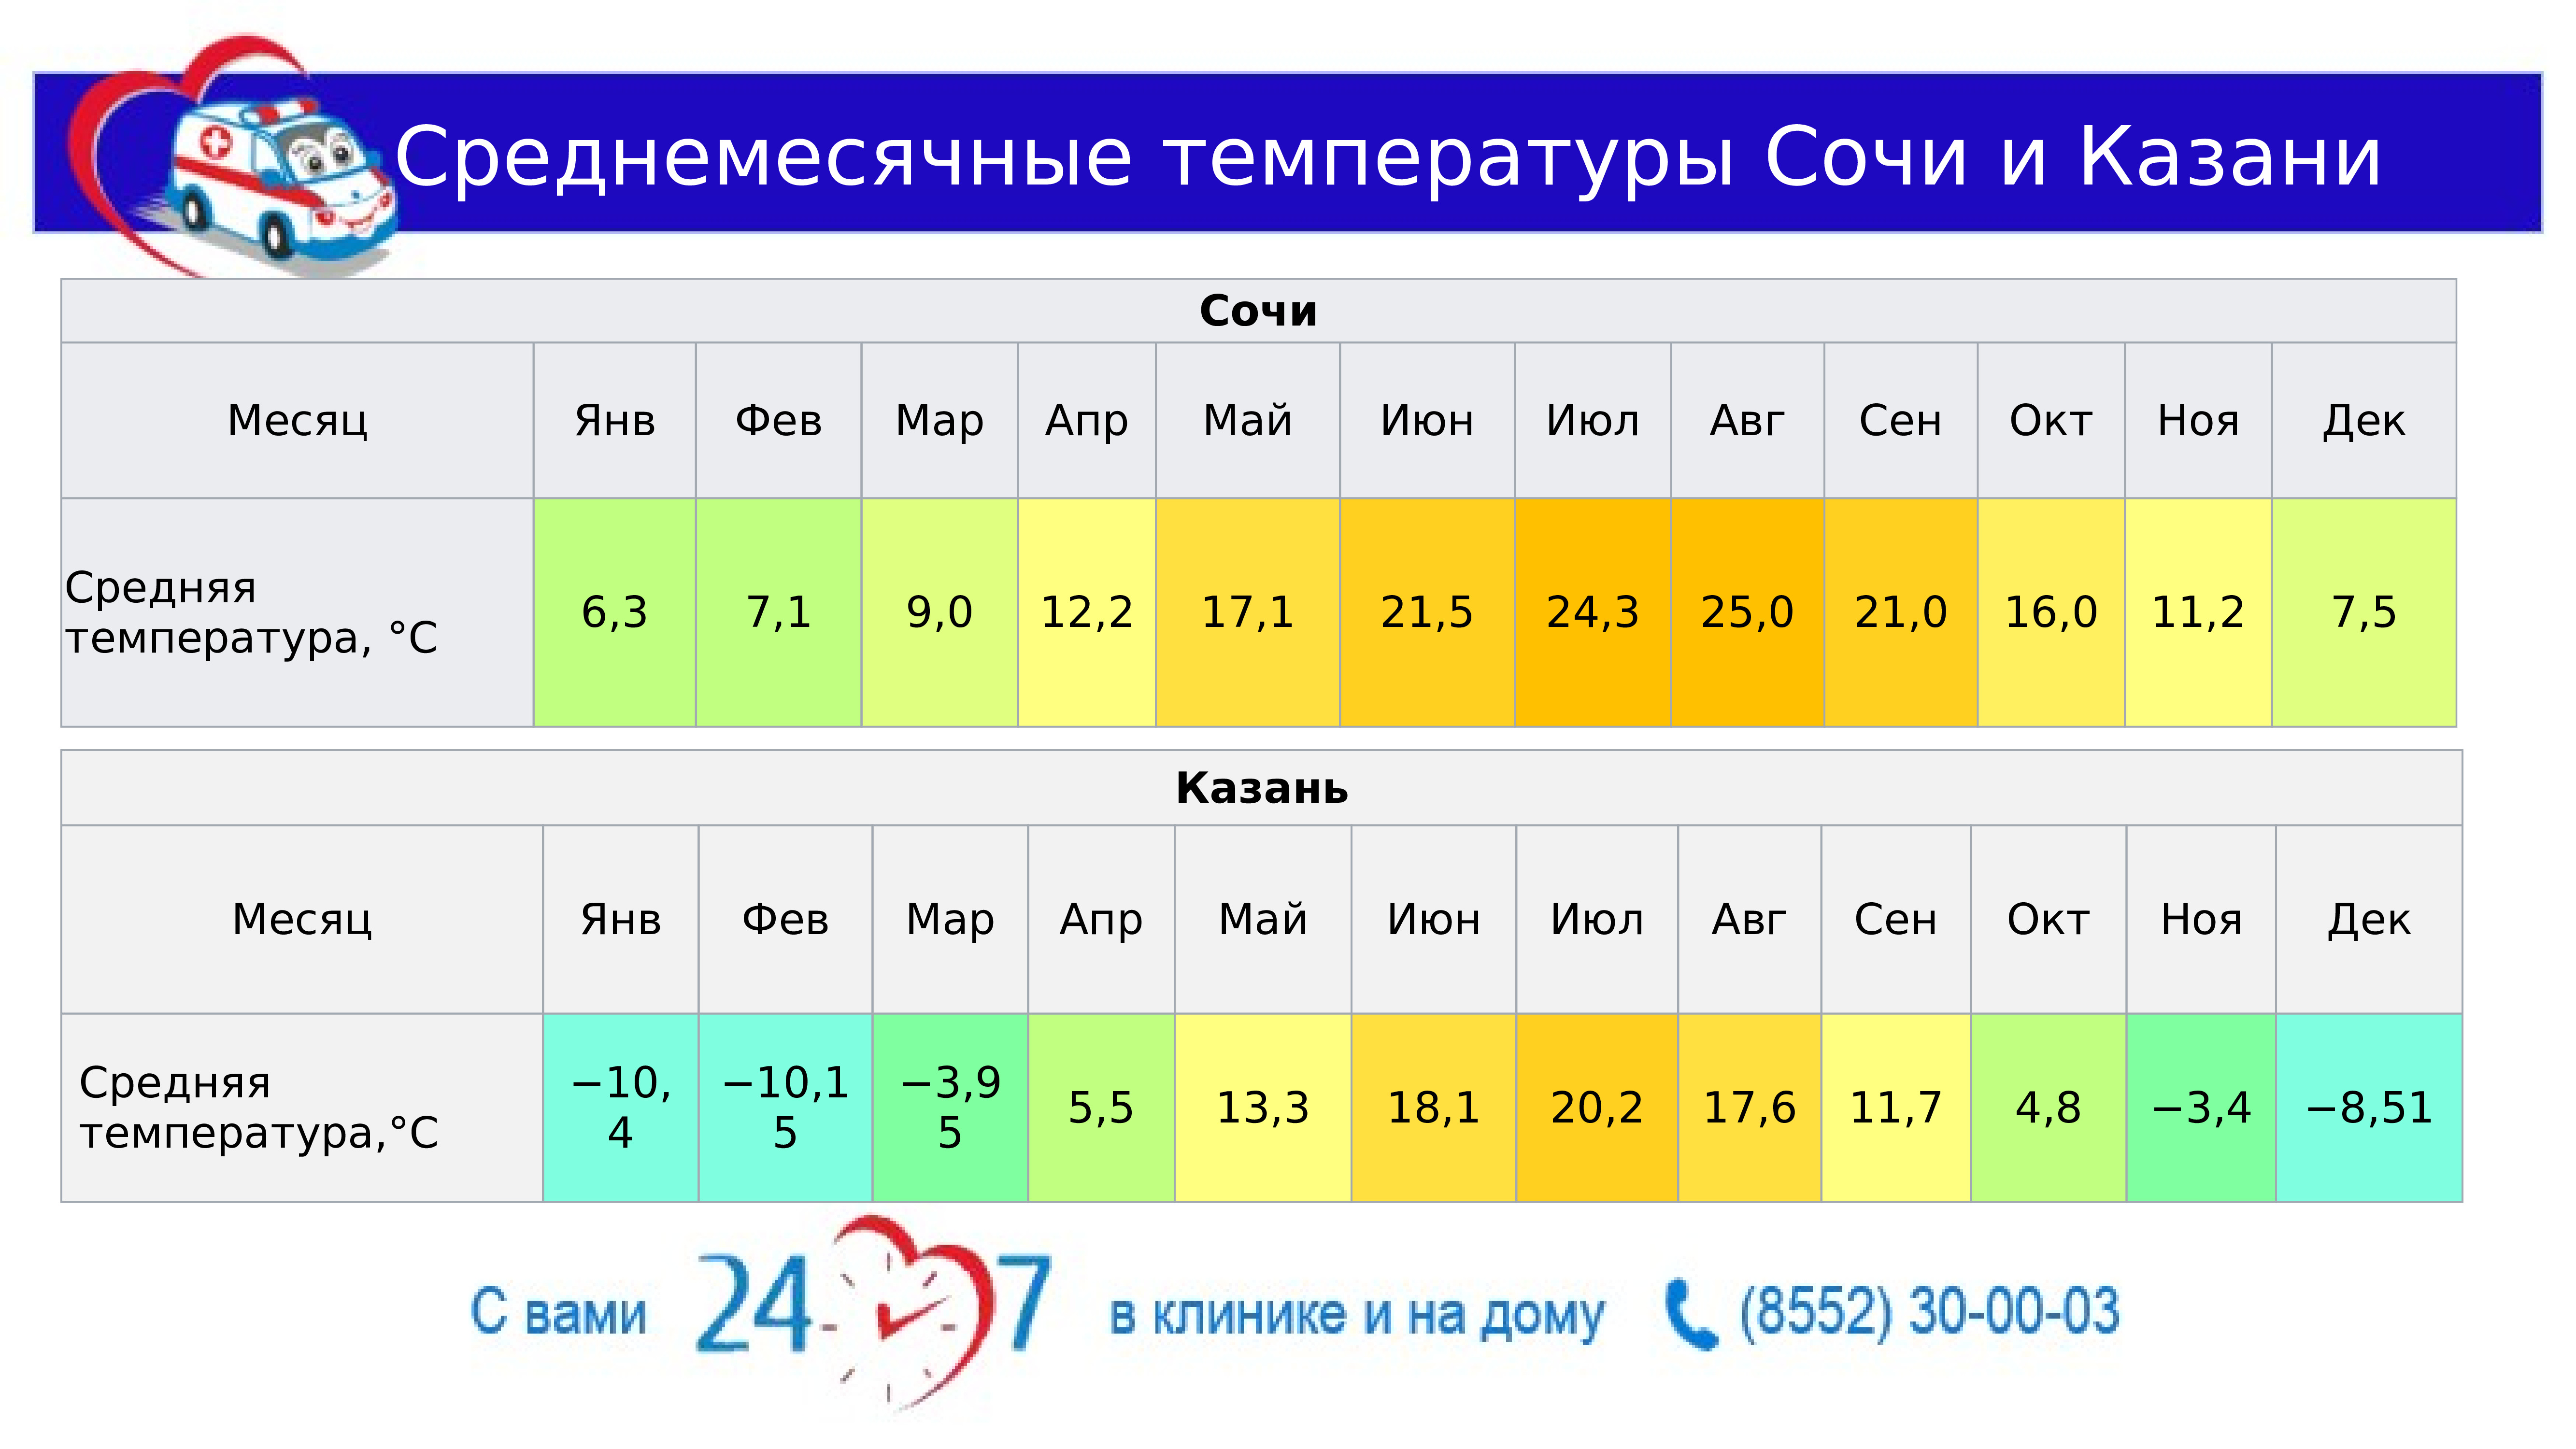 Сколько градусов казани температура. Средняя температура в Сочи. Средняя температура в Казани. Средняя температура в Сочи по месяцам. Средняя температура в Казани по месяцам.